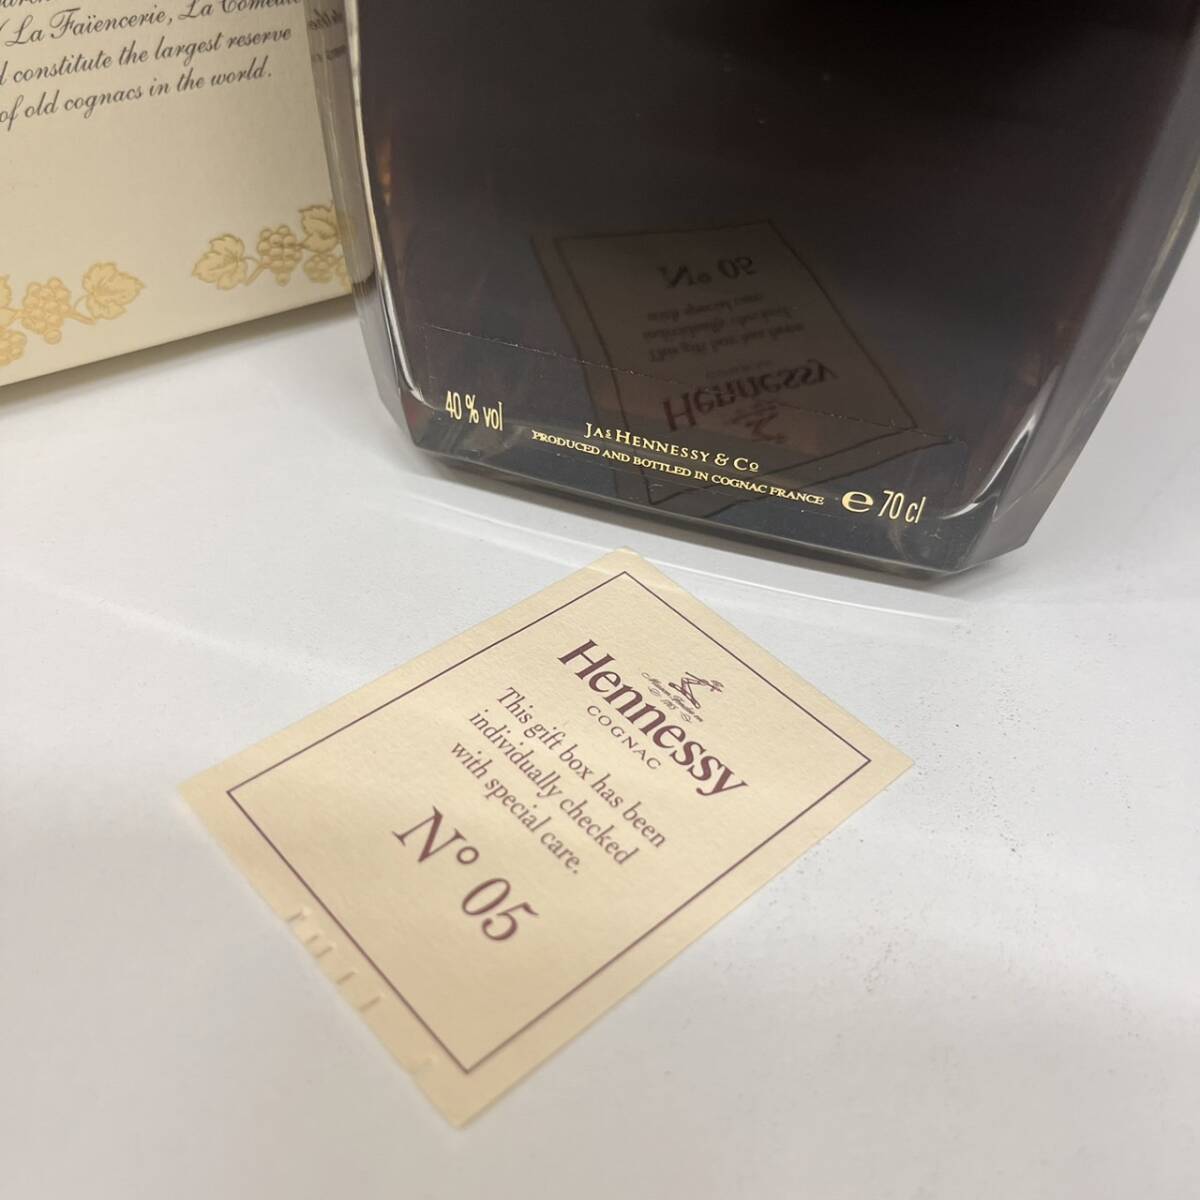 [C-24919] Hennessy красный книжка библиотека te Canter Gold верх 700ml 40% коробка коньяк редкость Hennessey не . штекер хранение товар 